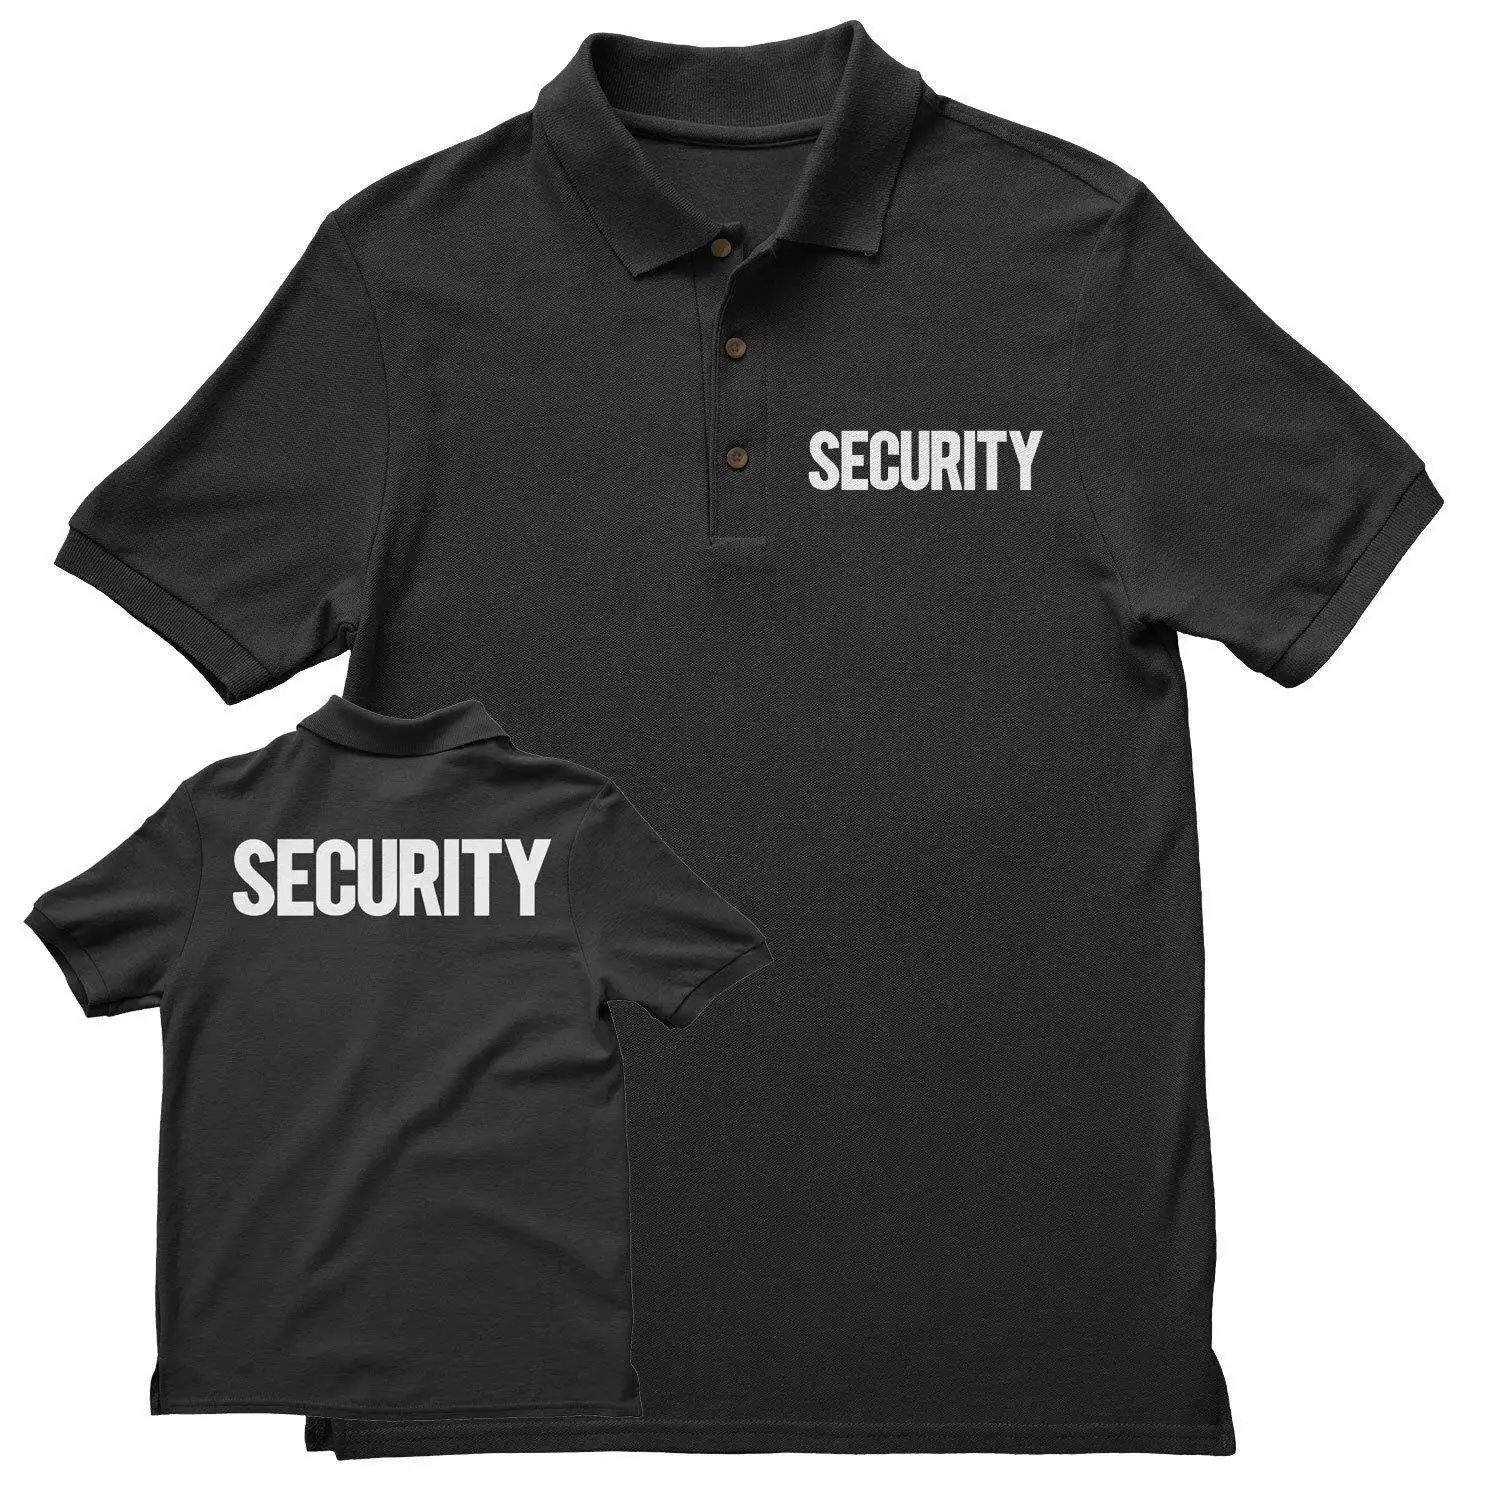 Custom Unisexบุรุษแขนสั้นยามรักษาความปลอดภัยเสื้อโปโลยุทธวิธีHi Visโลโก้พิมพ์TeeพนักงานกิจกรรมGuardชุดเสื้อยืด